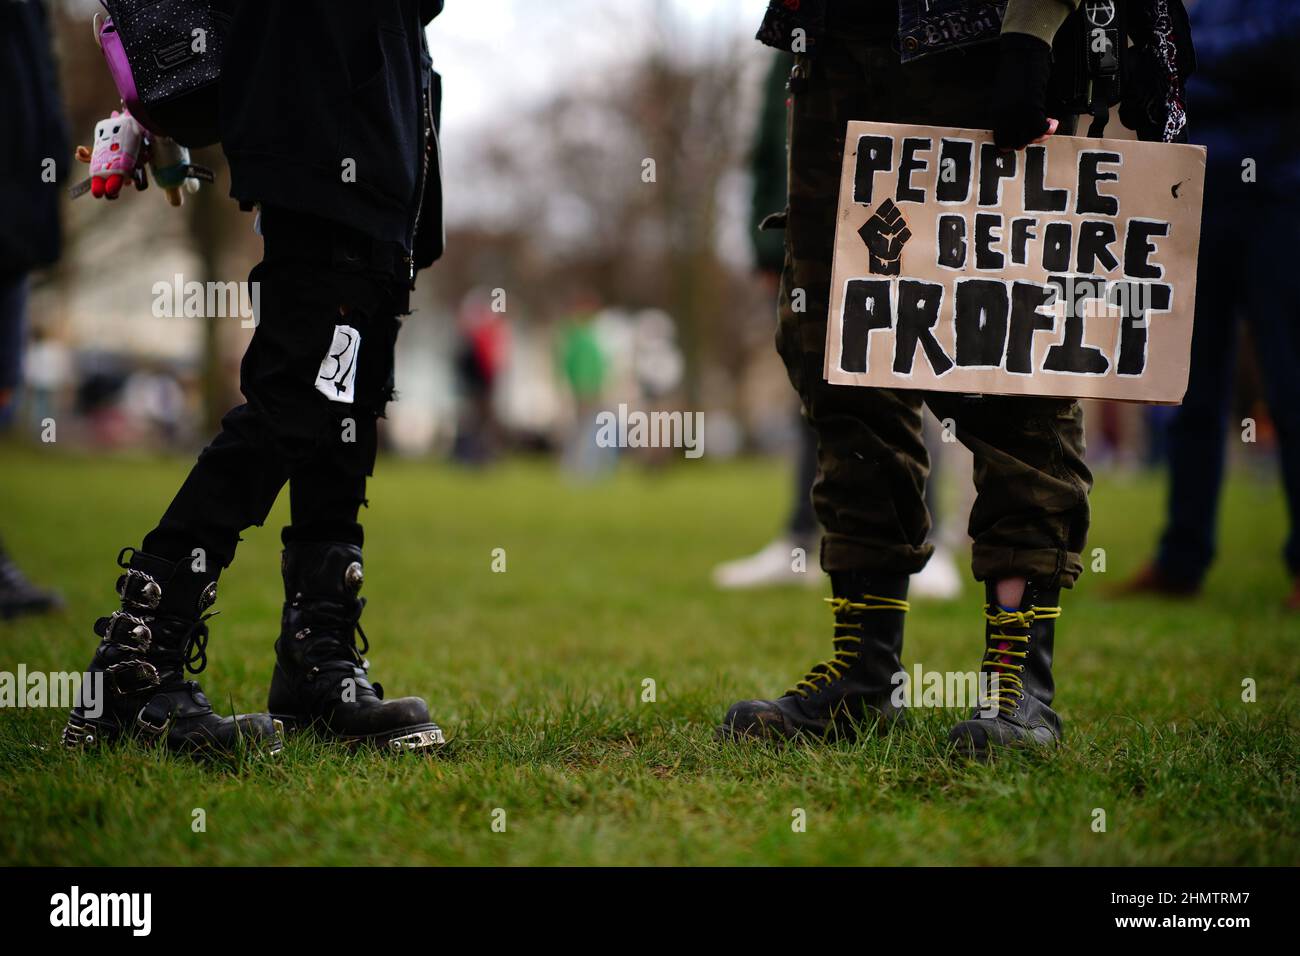 Menschen in Bristol nehmen an der landesweiten Volksversammlung Teil, um gegen die Lebenshaltungskrise zu protestieren. Bilddatum: Samstag, 12. Februar 2022. Stockfoto